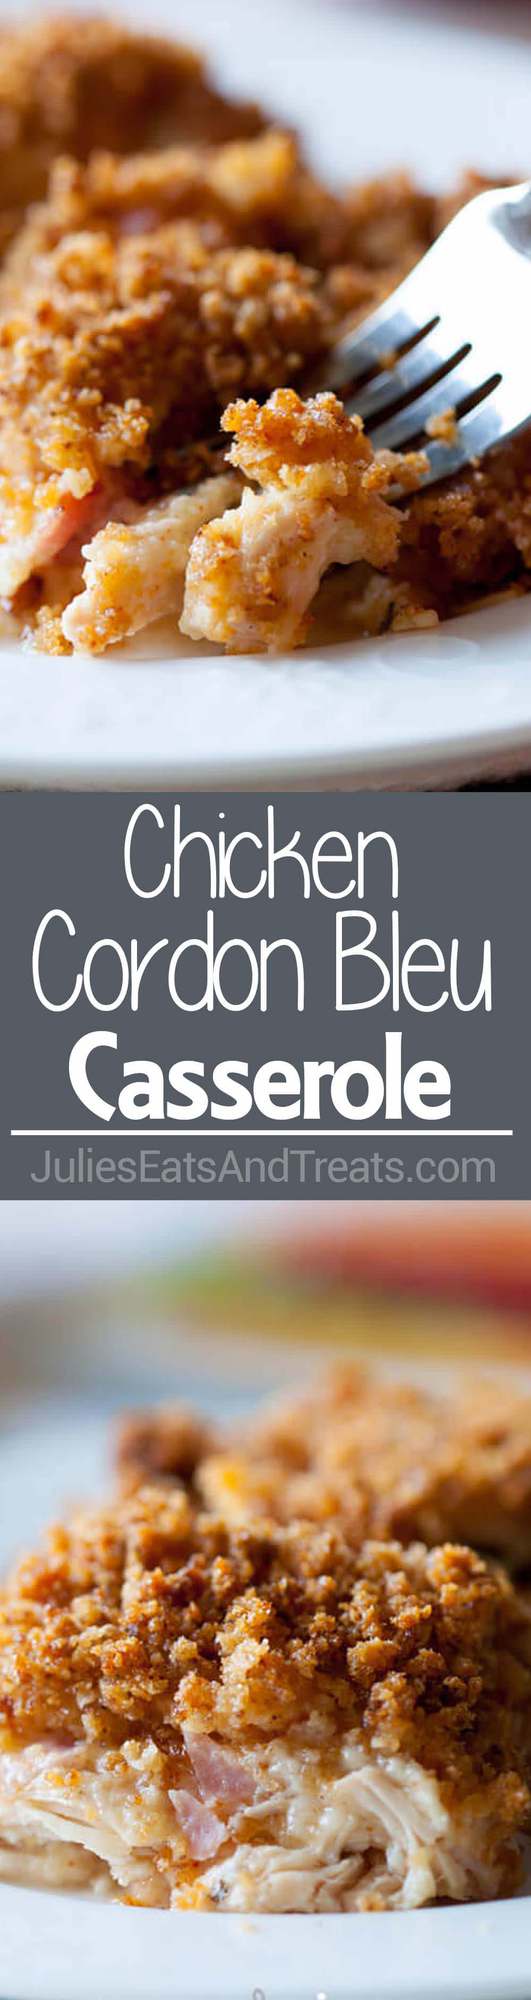 Chicken Cordon Bleu Casserole - Julie's Eats & Treats